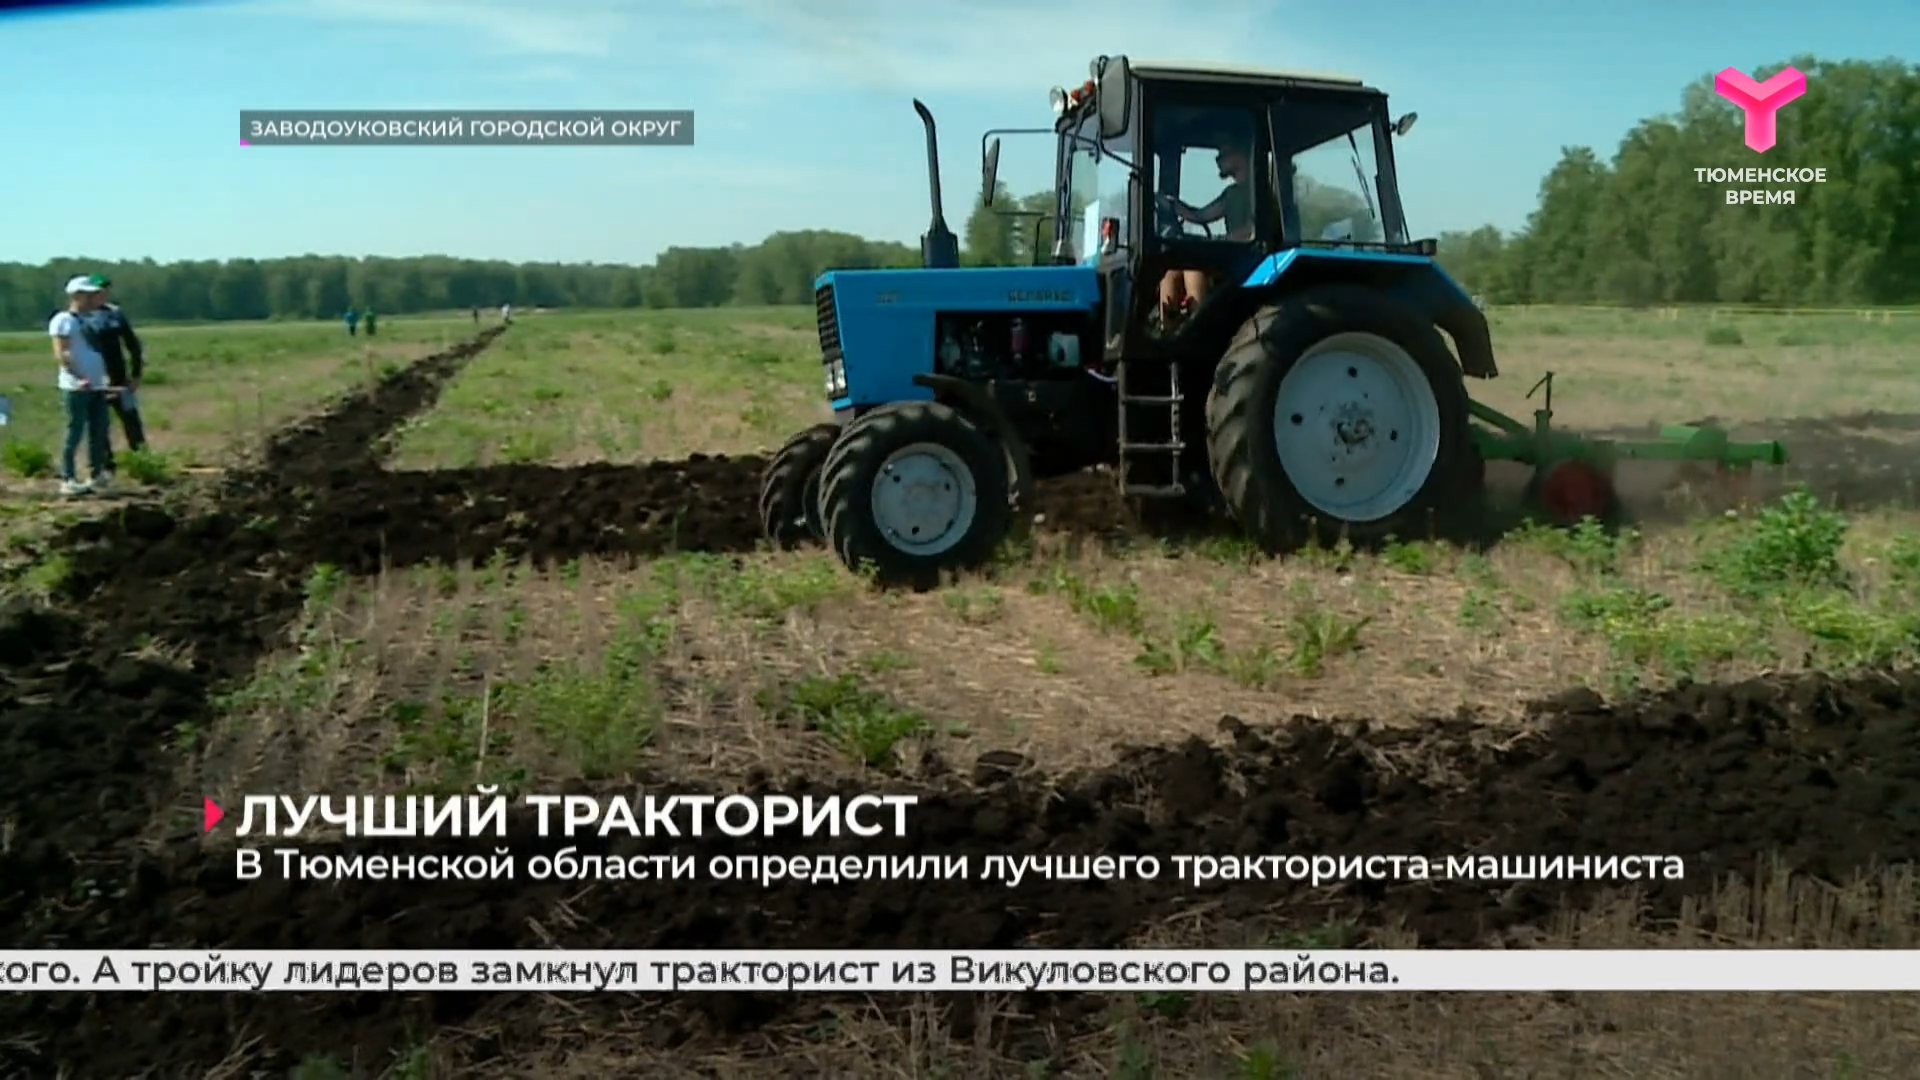 В Тюменской области определили лучшего тракториста-машиниста